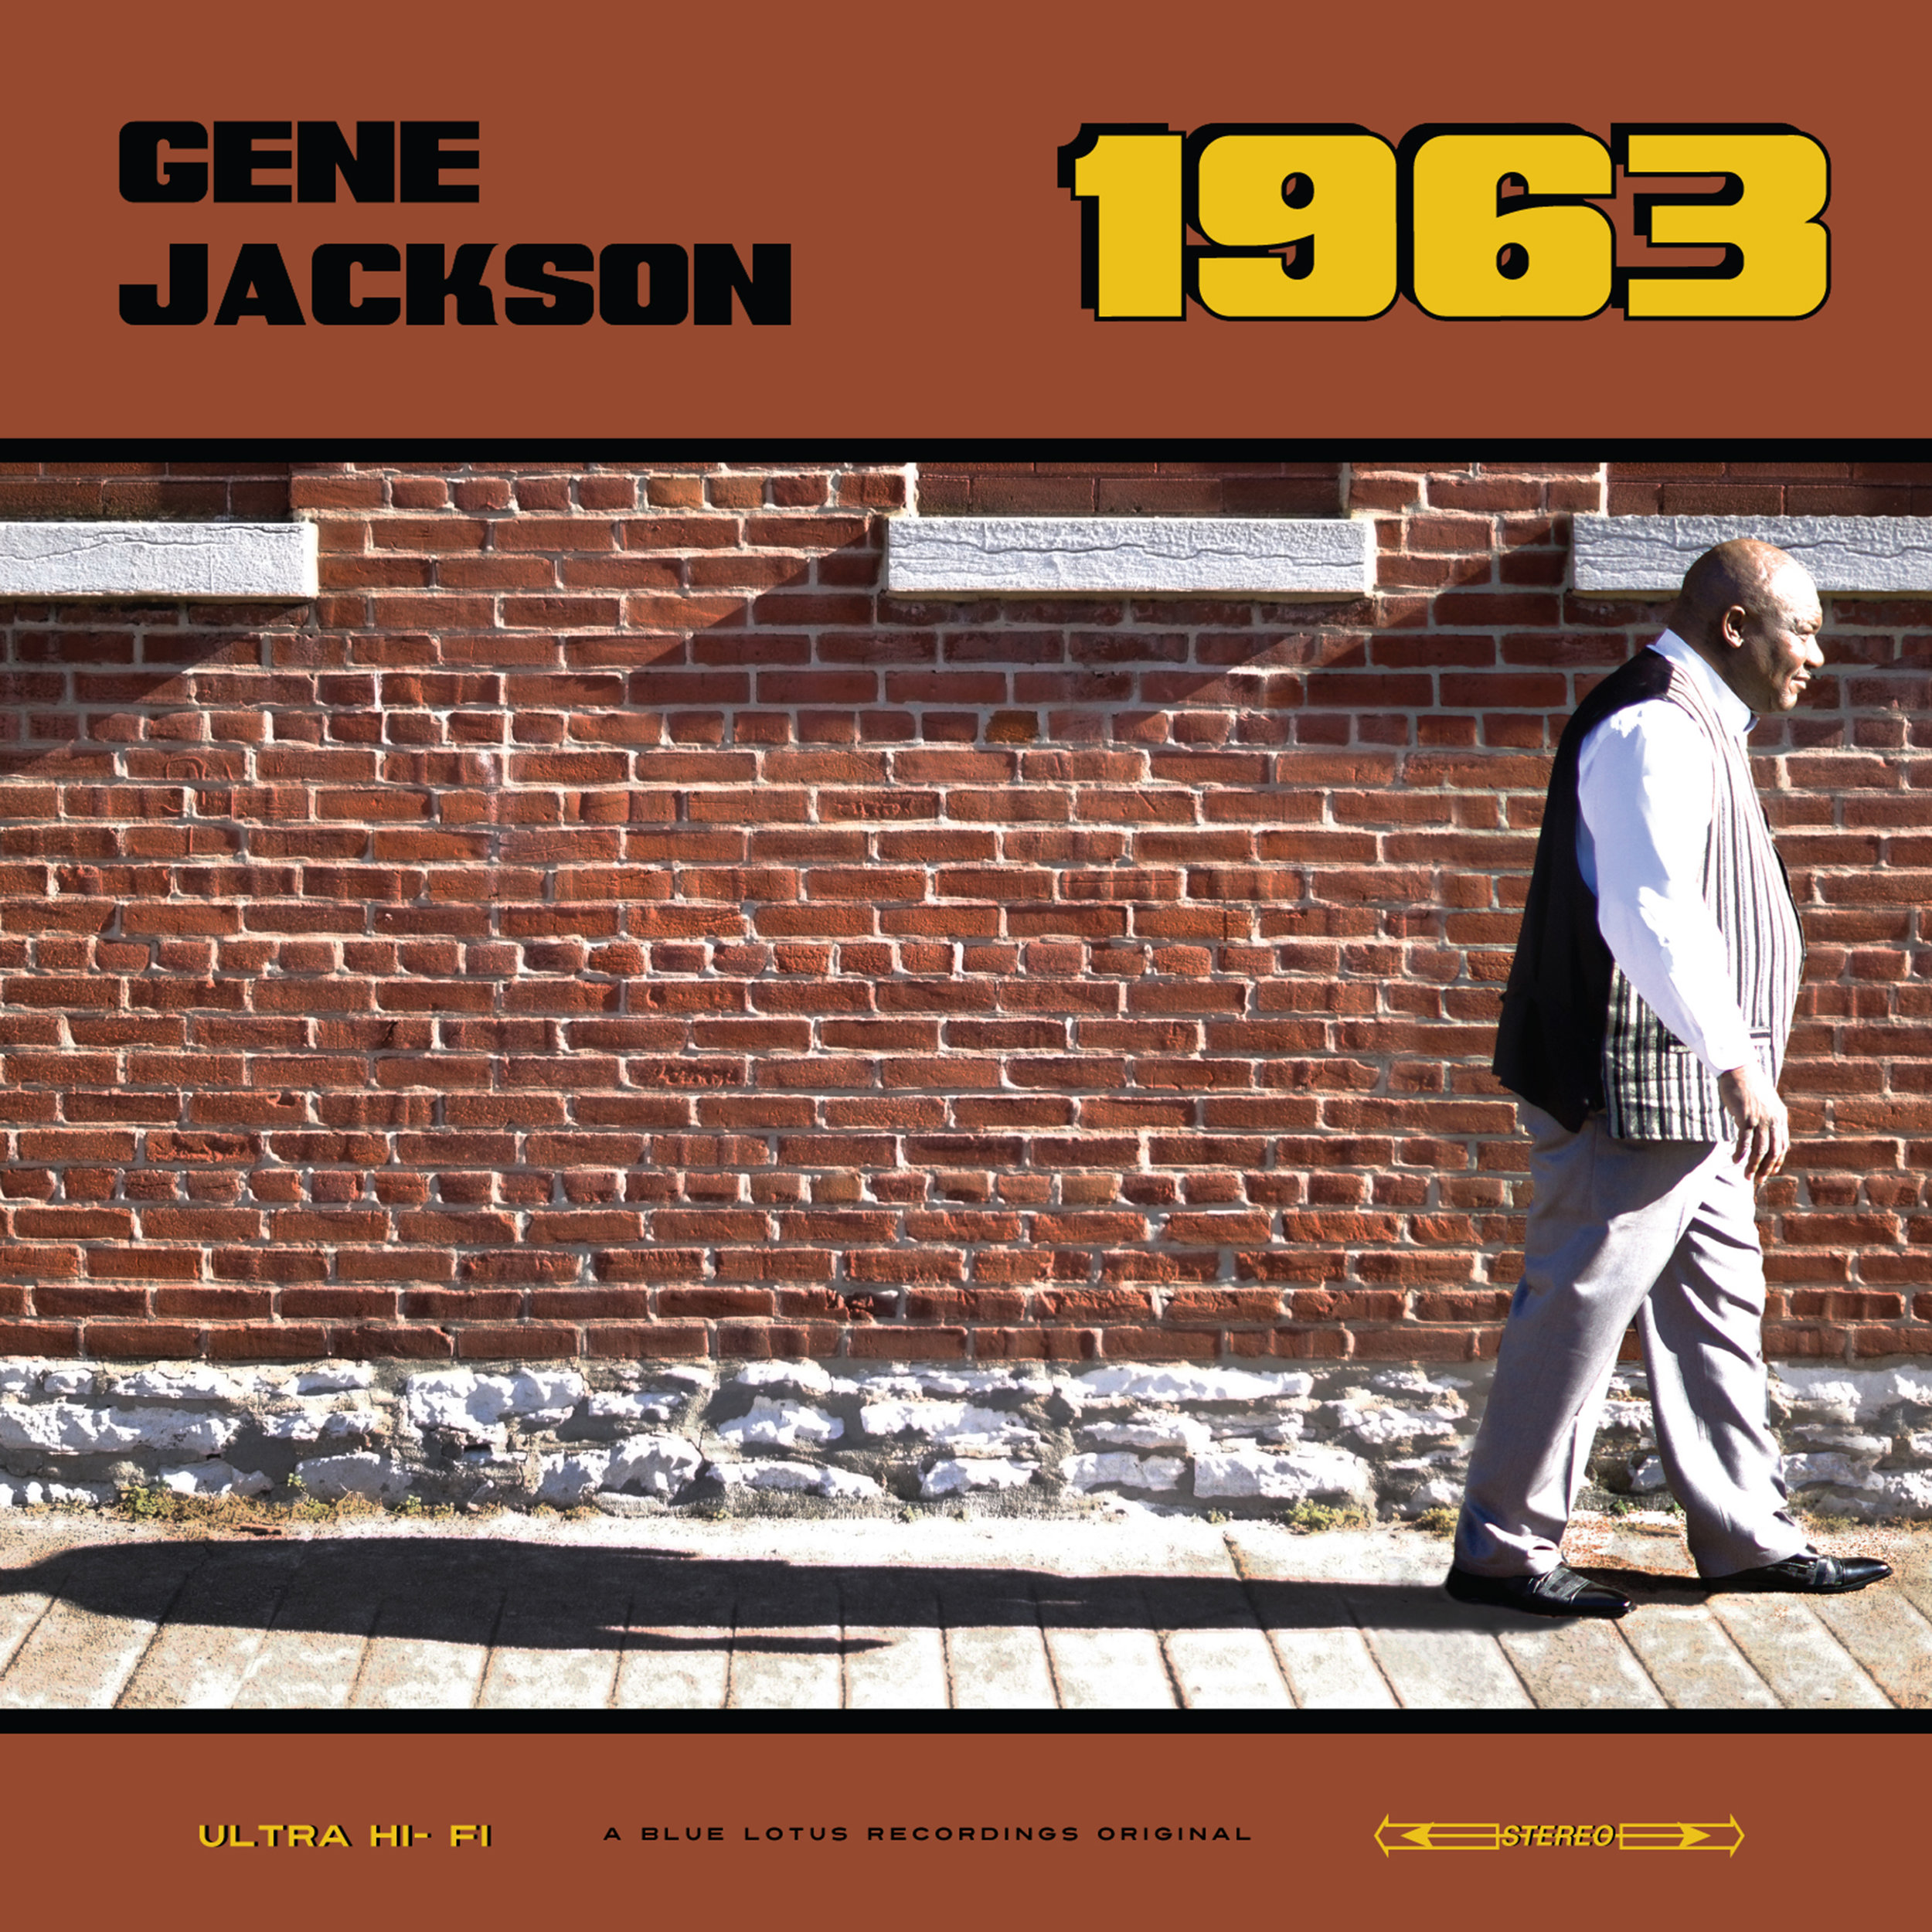 Gene Jackson | "1963"